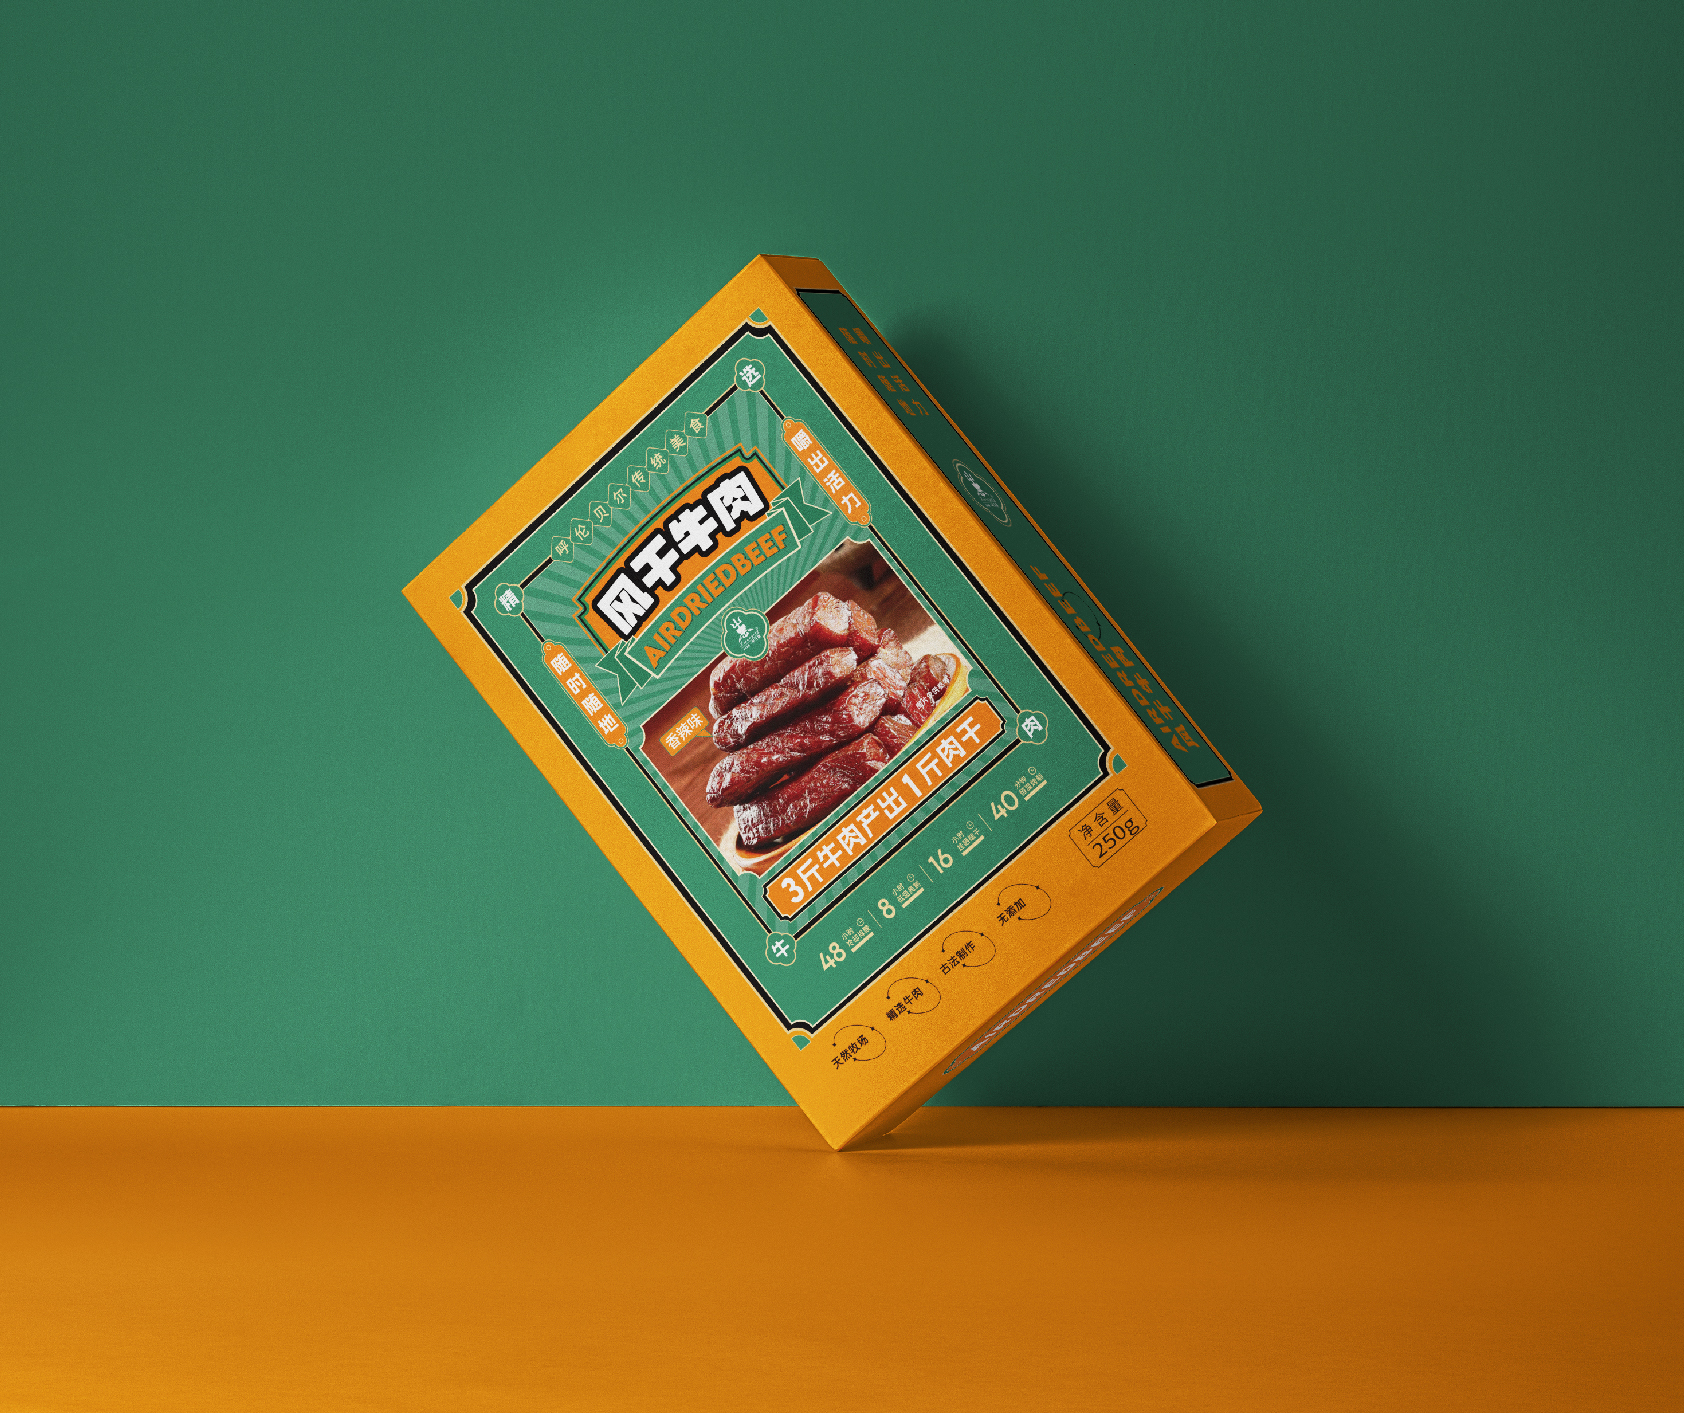 牛肉干包装设计-食品包装设计-包装设计-零食包装设计